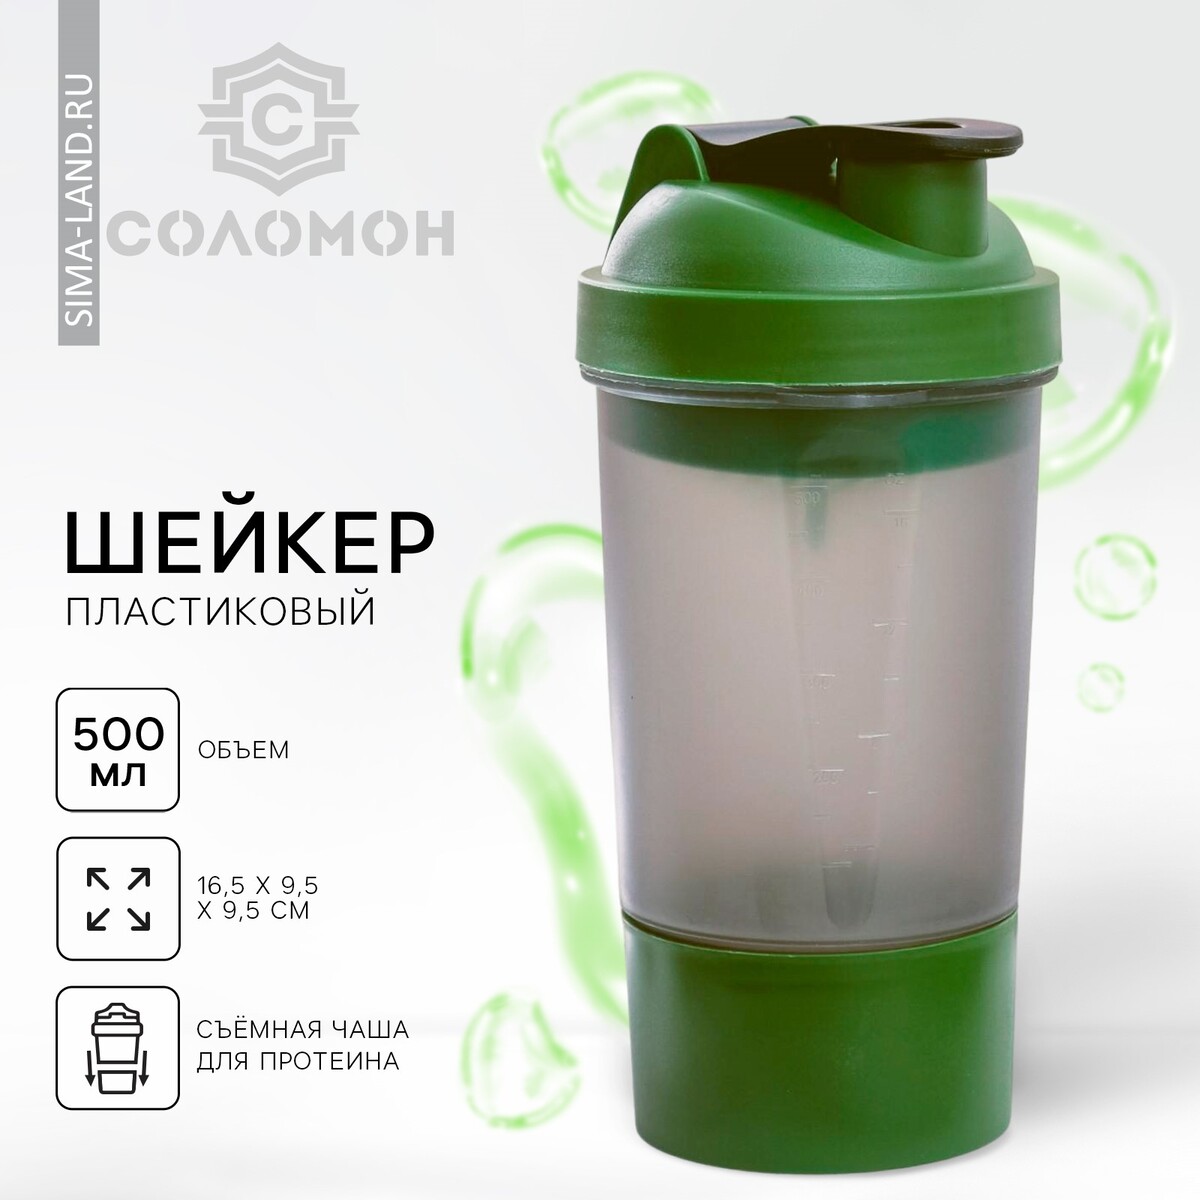 Шейкер спортивный с чашей под протеин, серо-зеленый, 500 мл